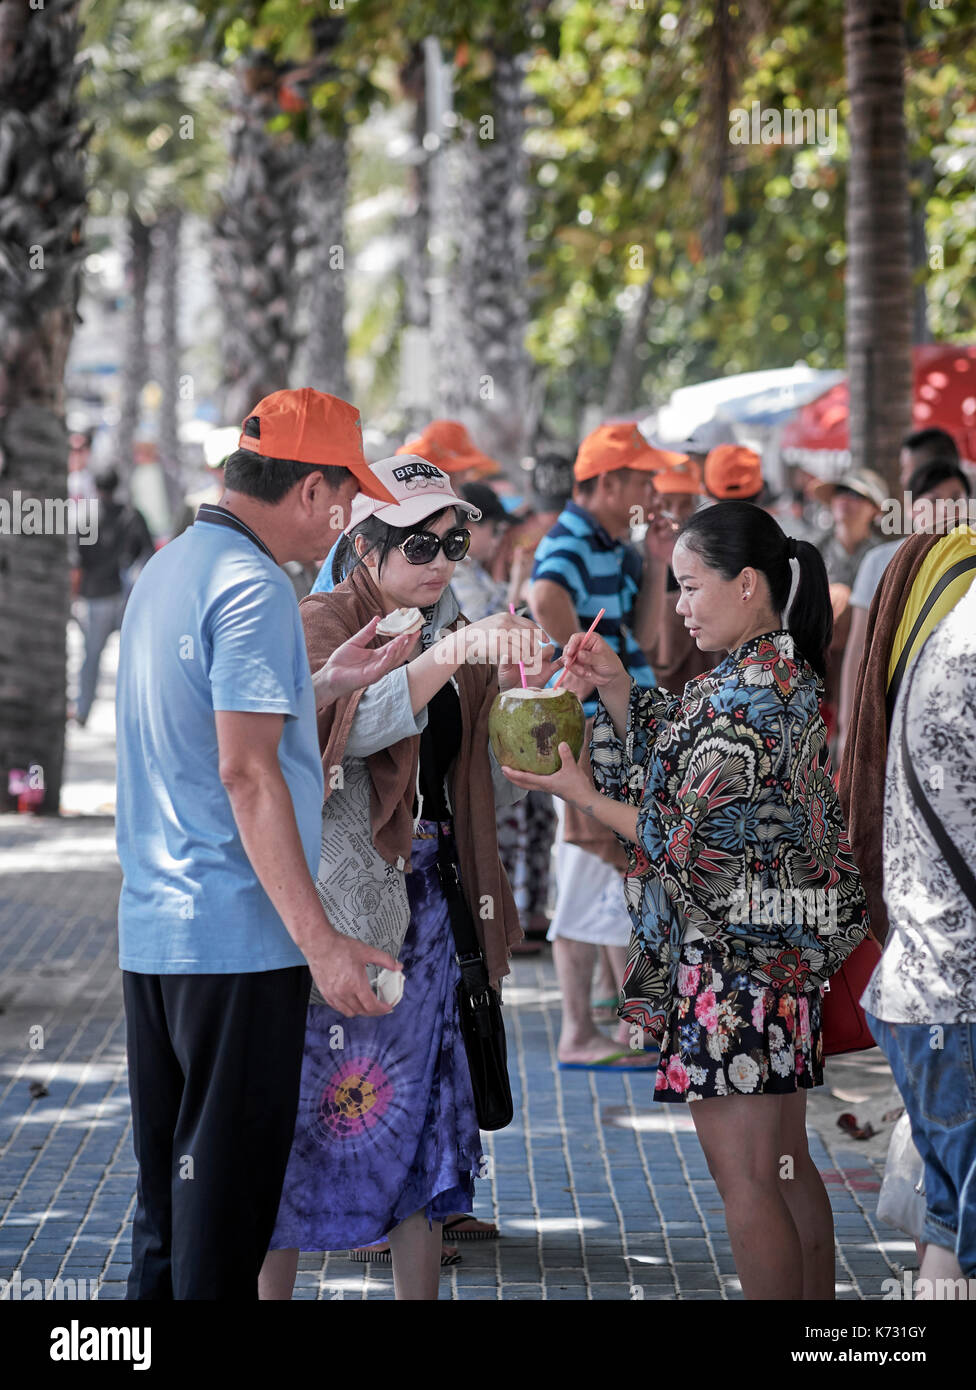 Chinesische Touristen teilen sich einen Kokosnuss-Drink in Pattaya Thailand Südostasien. Chinesische Touristengruppe. Pattaya Beach Road Stockfoto